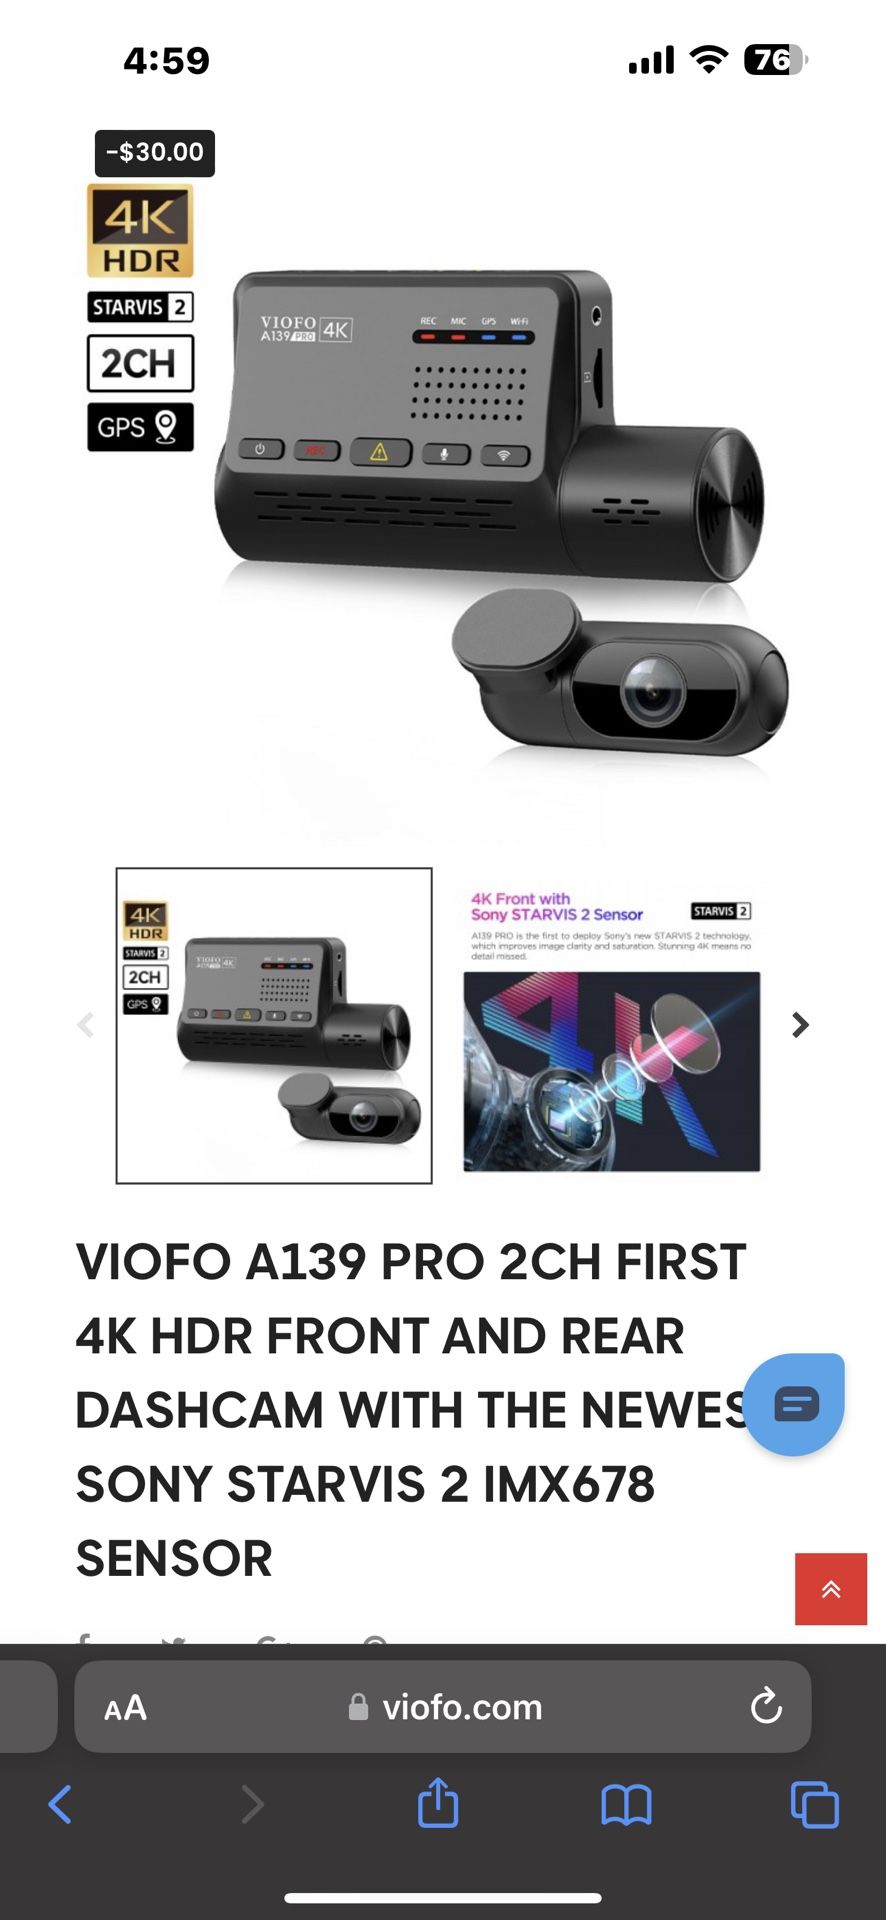 Dash-cam Viofo A139 Pro